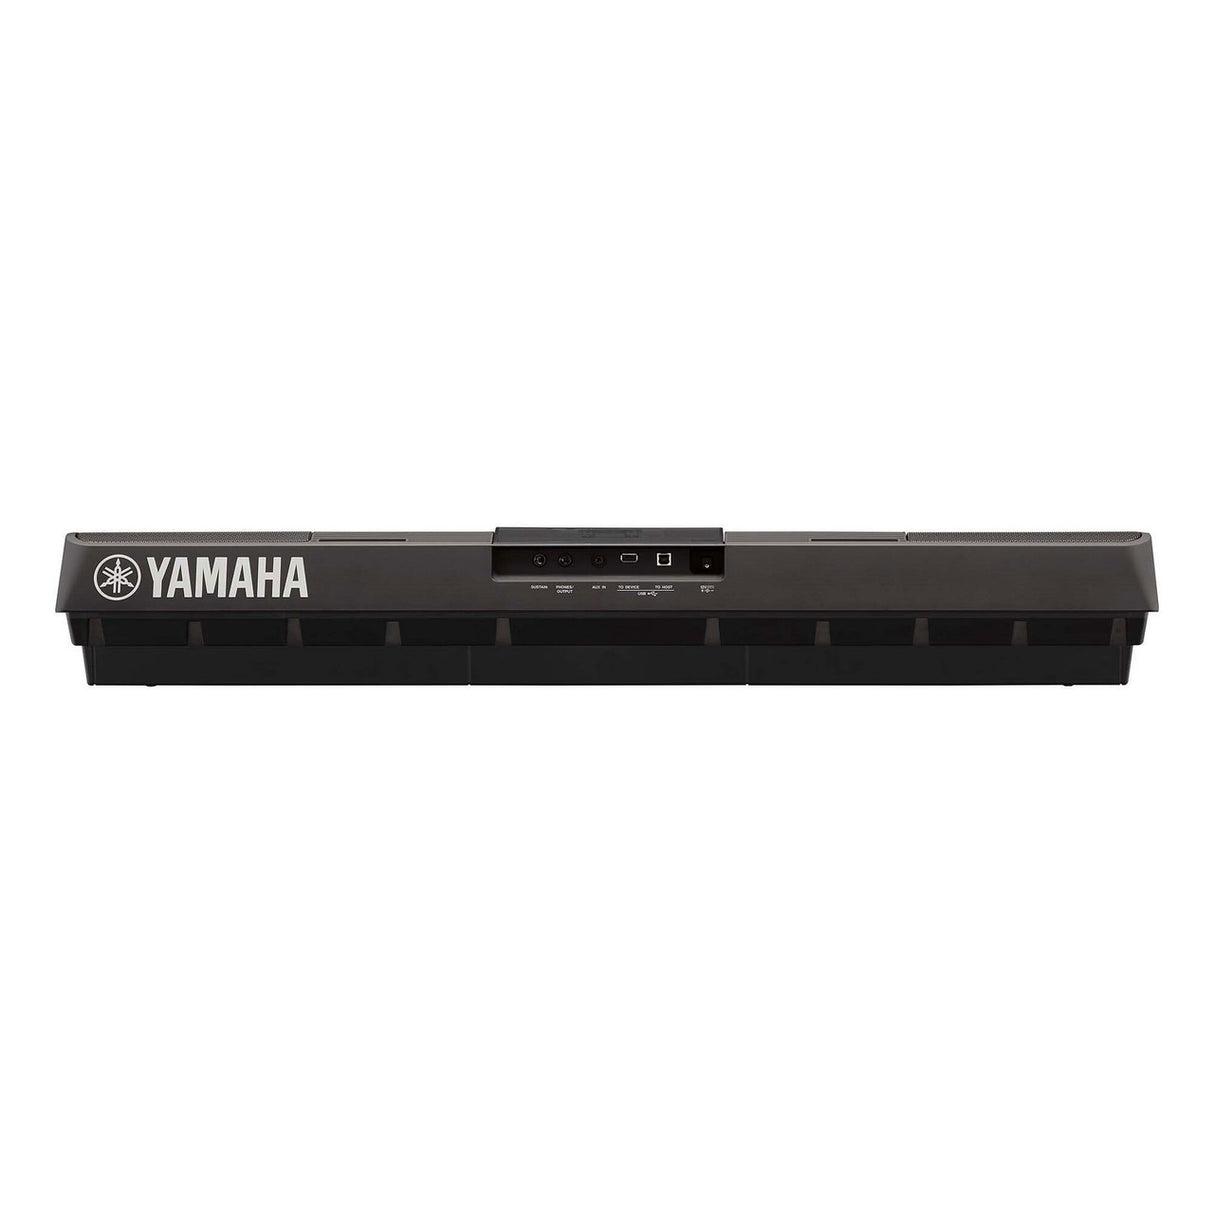 Yamaha PSR-E463 | 61 Key Portable Keyboard